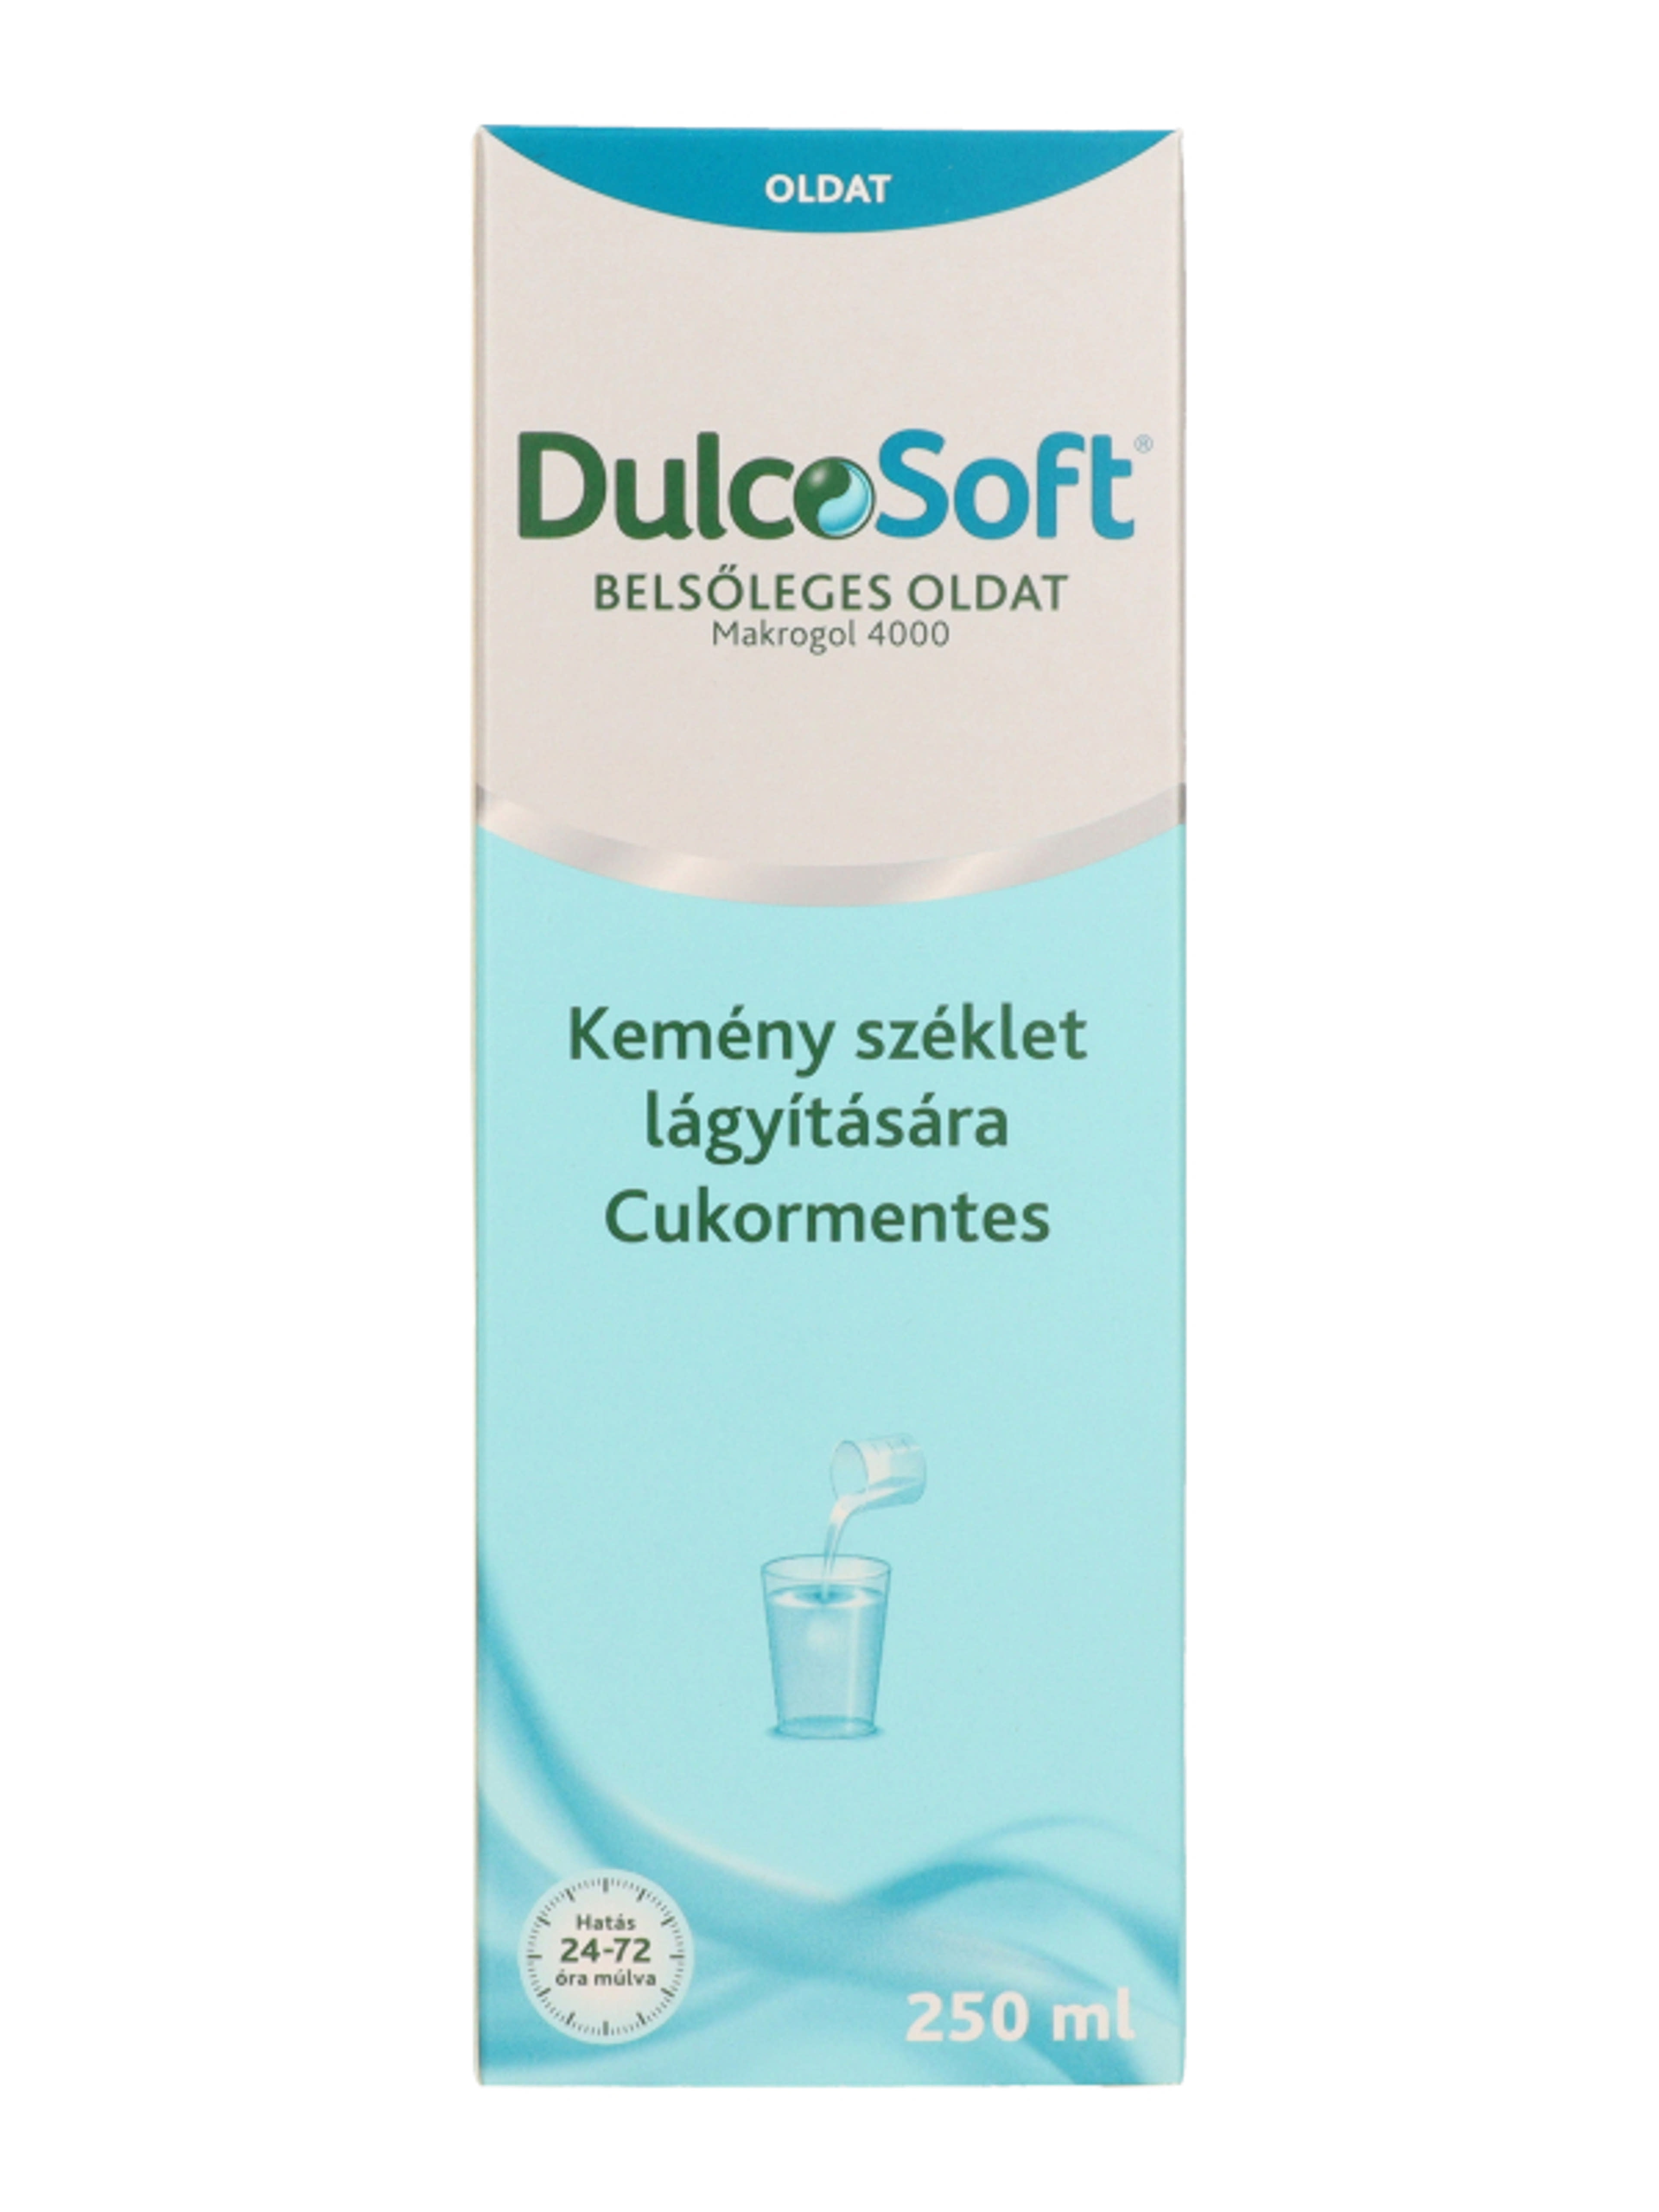 DulcoSoft belsőleges oldat - 250 ml